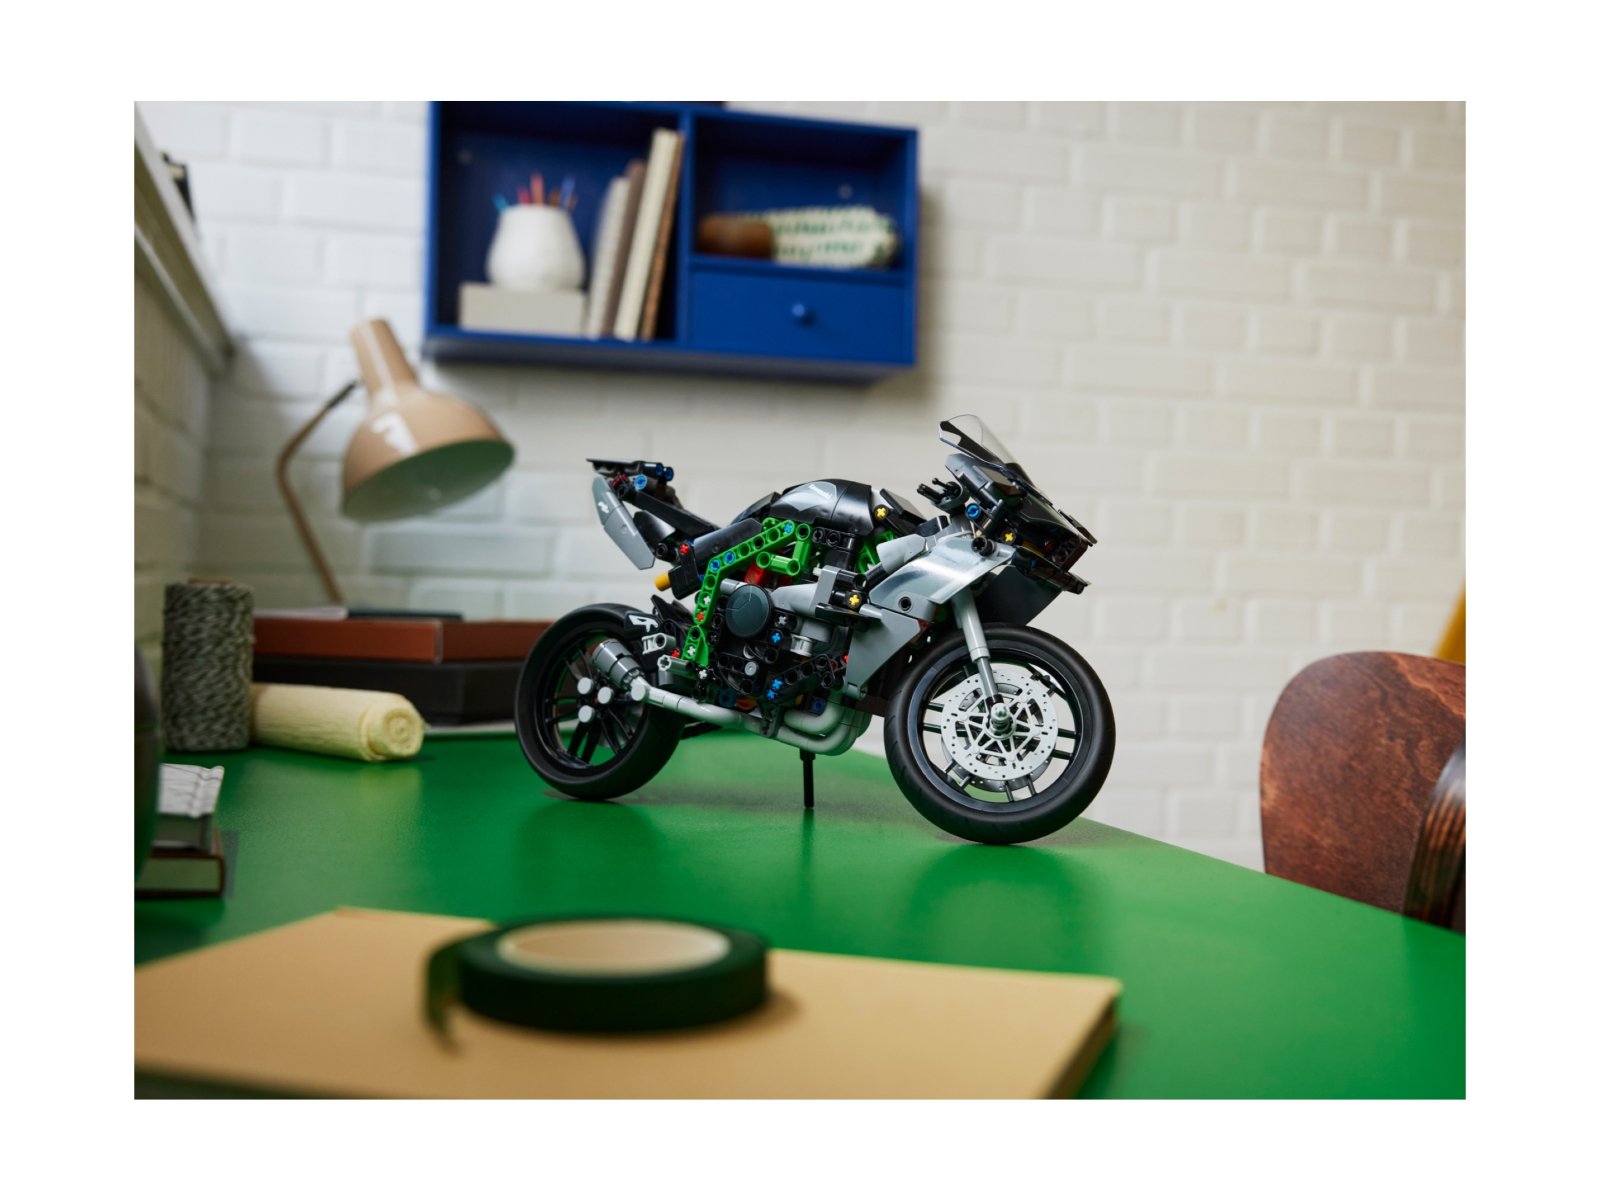 Moto LEGO Technic Kawasaki Ninja H2R - 42170